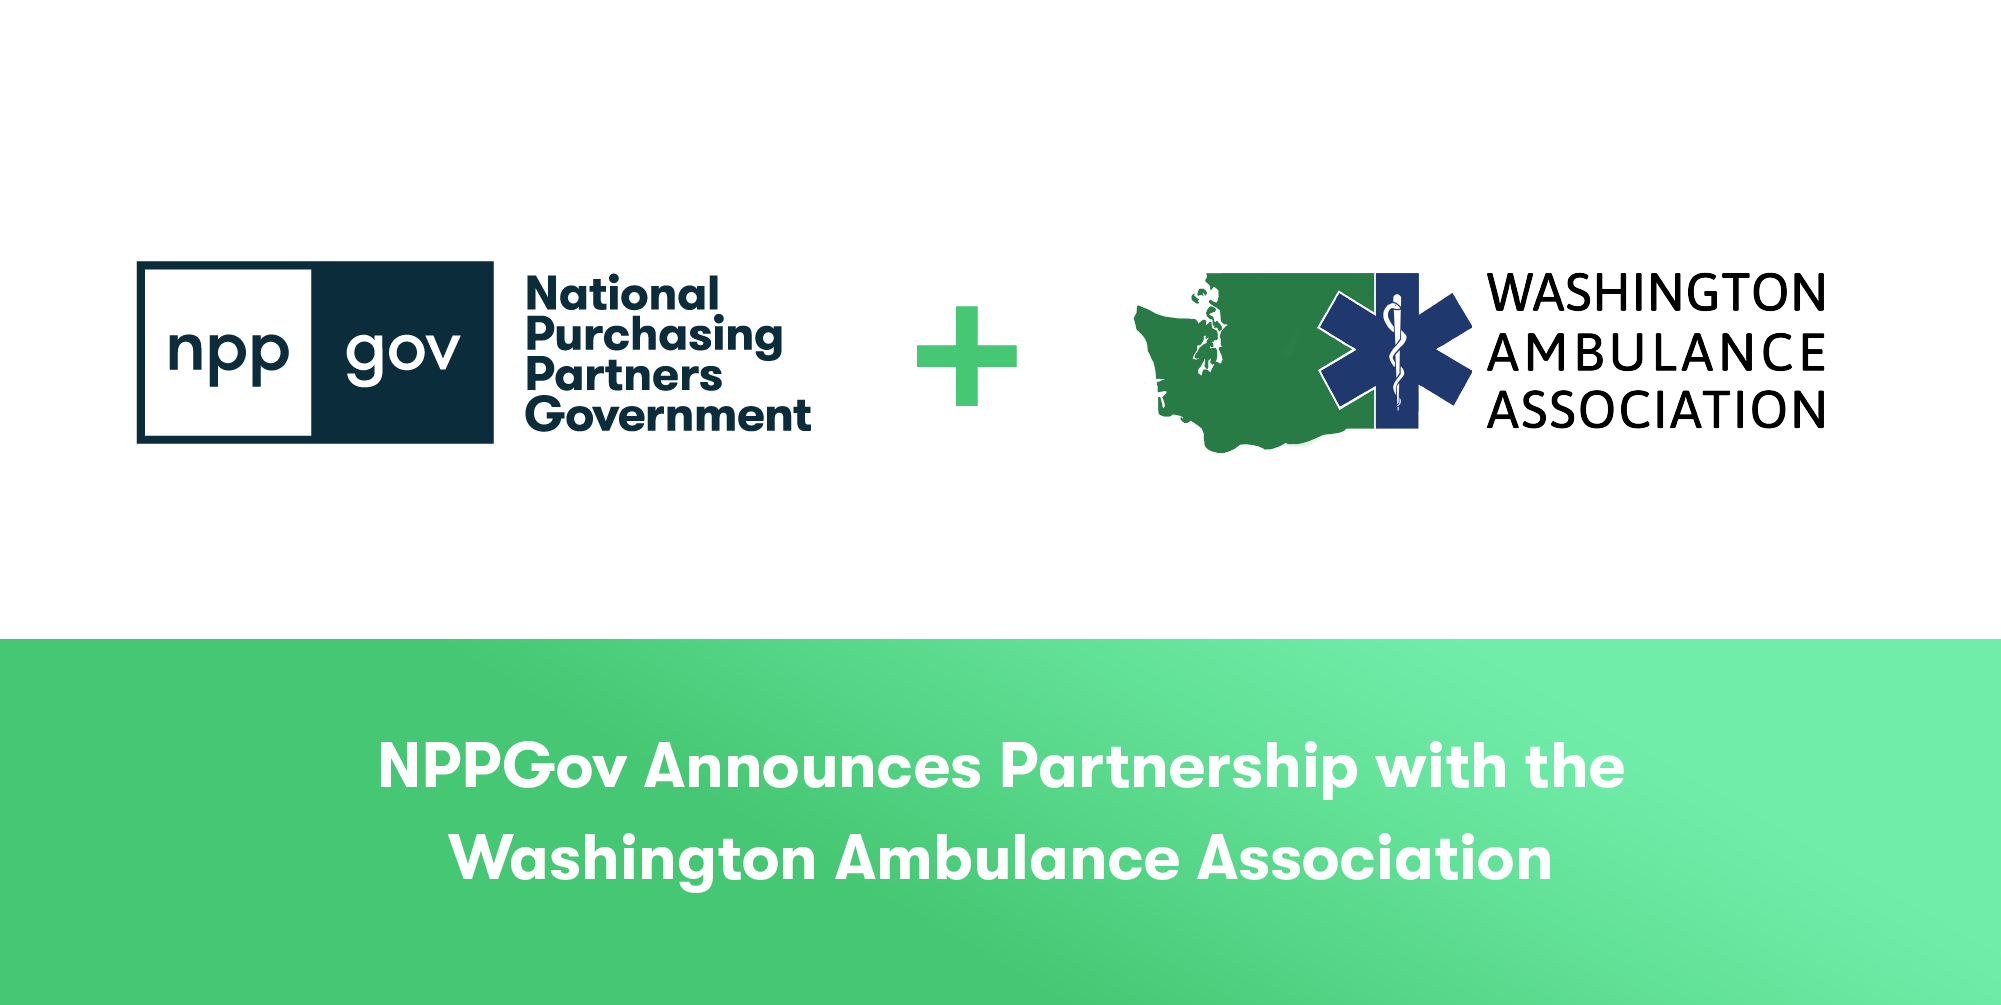 NPPGov Public Safety GPO Partners With The Washington Ambulance Association